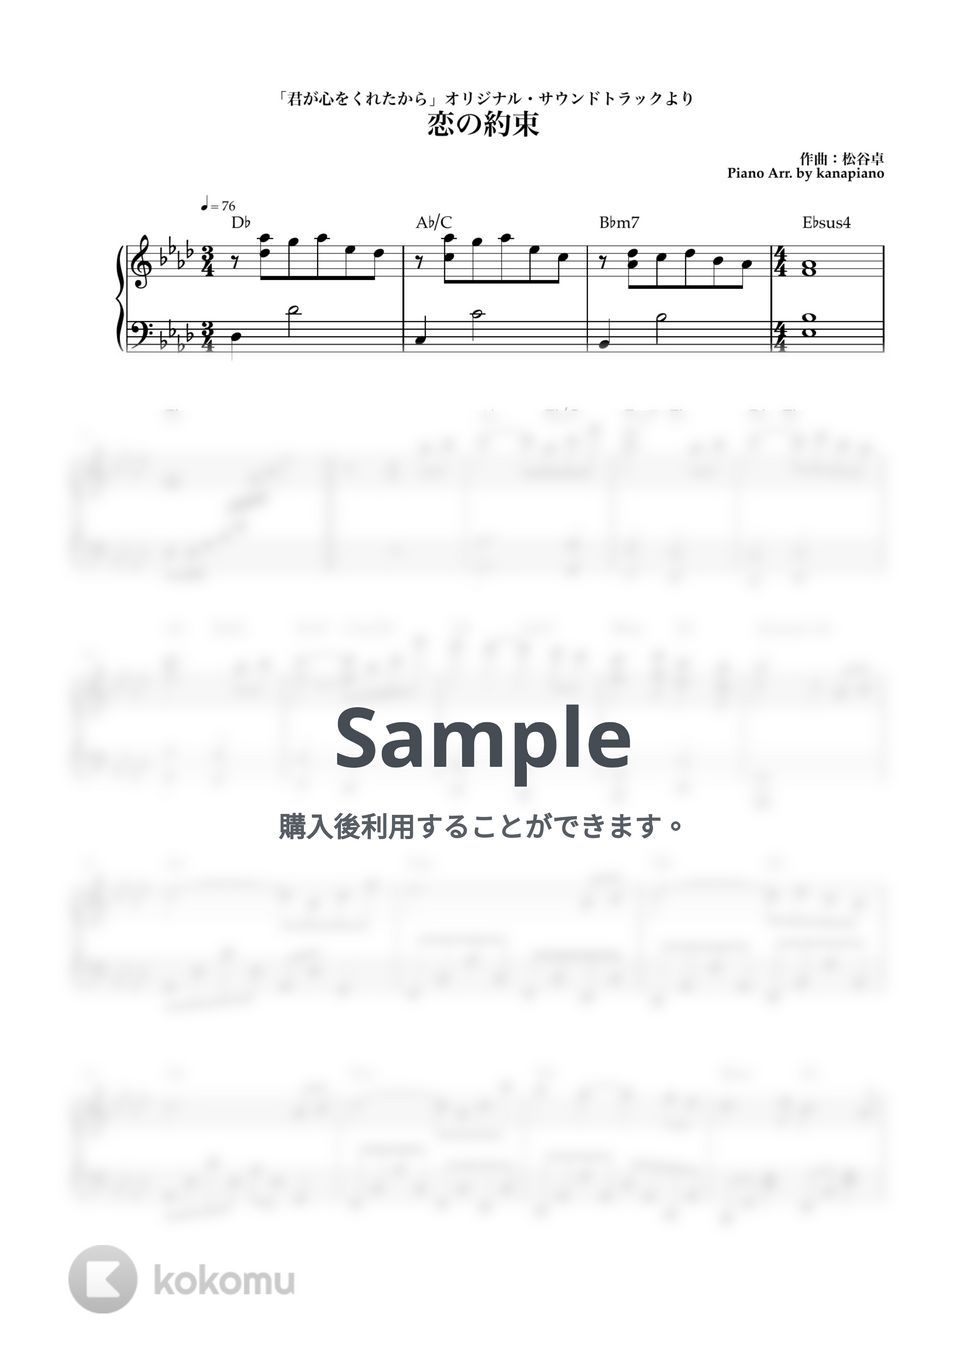 松谷卓 - 恋の約束 (ピアノ/君が心をくれたから) by kanapiano